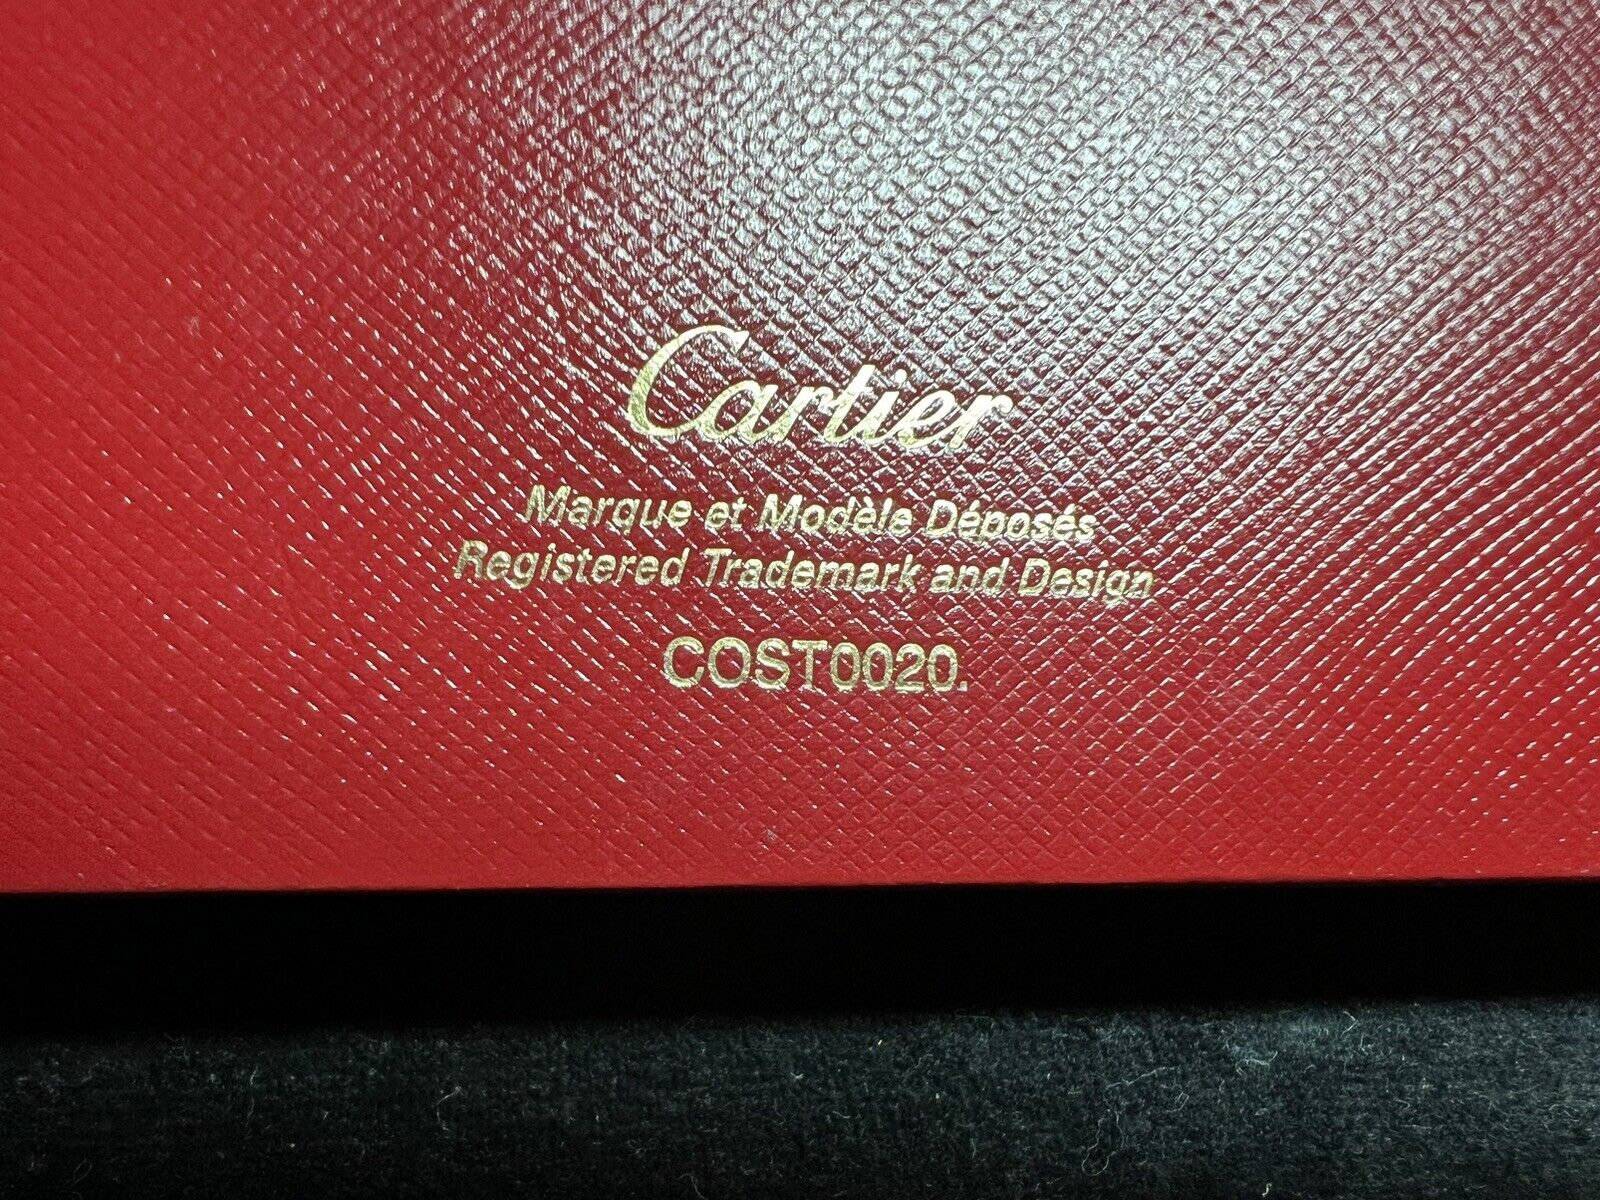 Cartier Box Pen Sphere Fountain Pen diablo COST0020 With Warranty